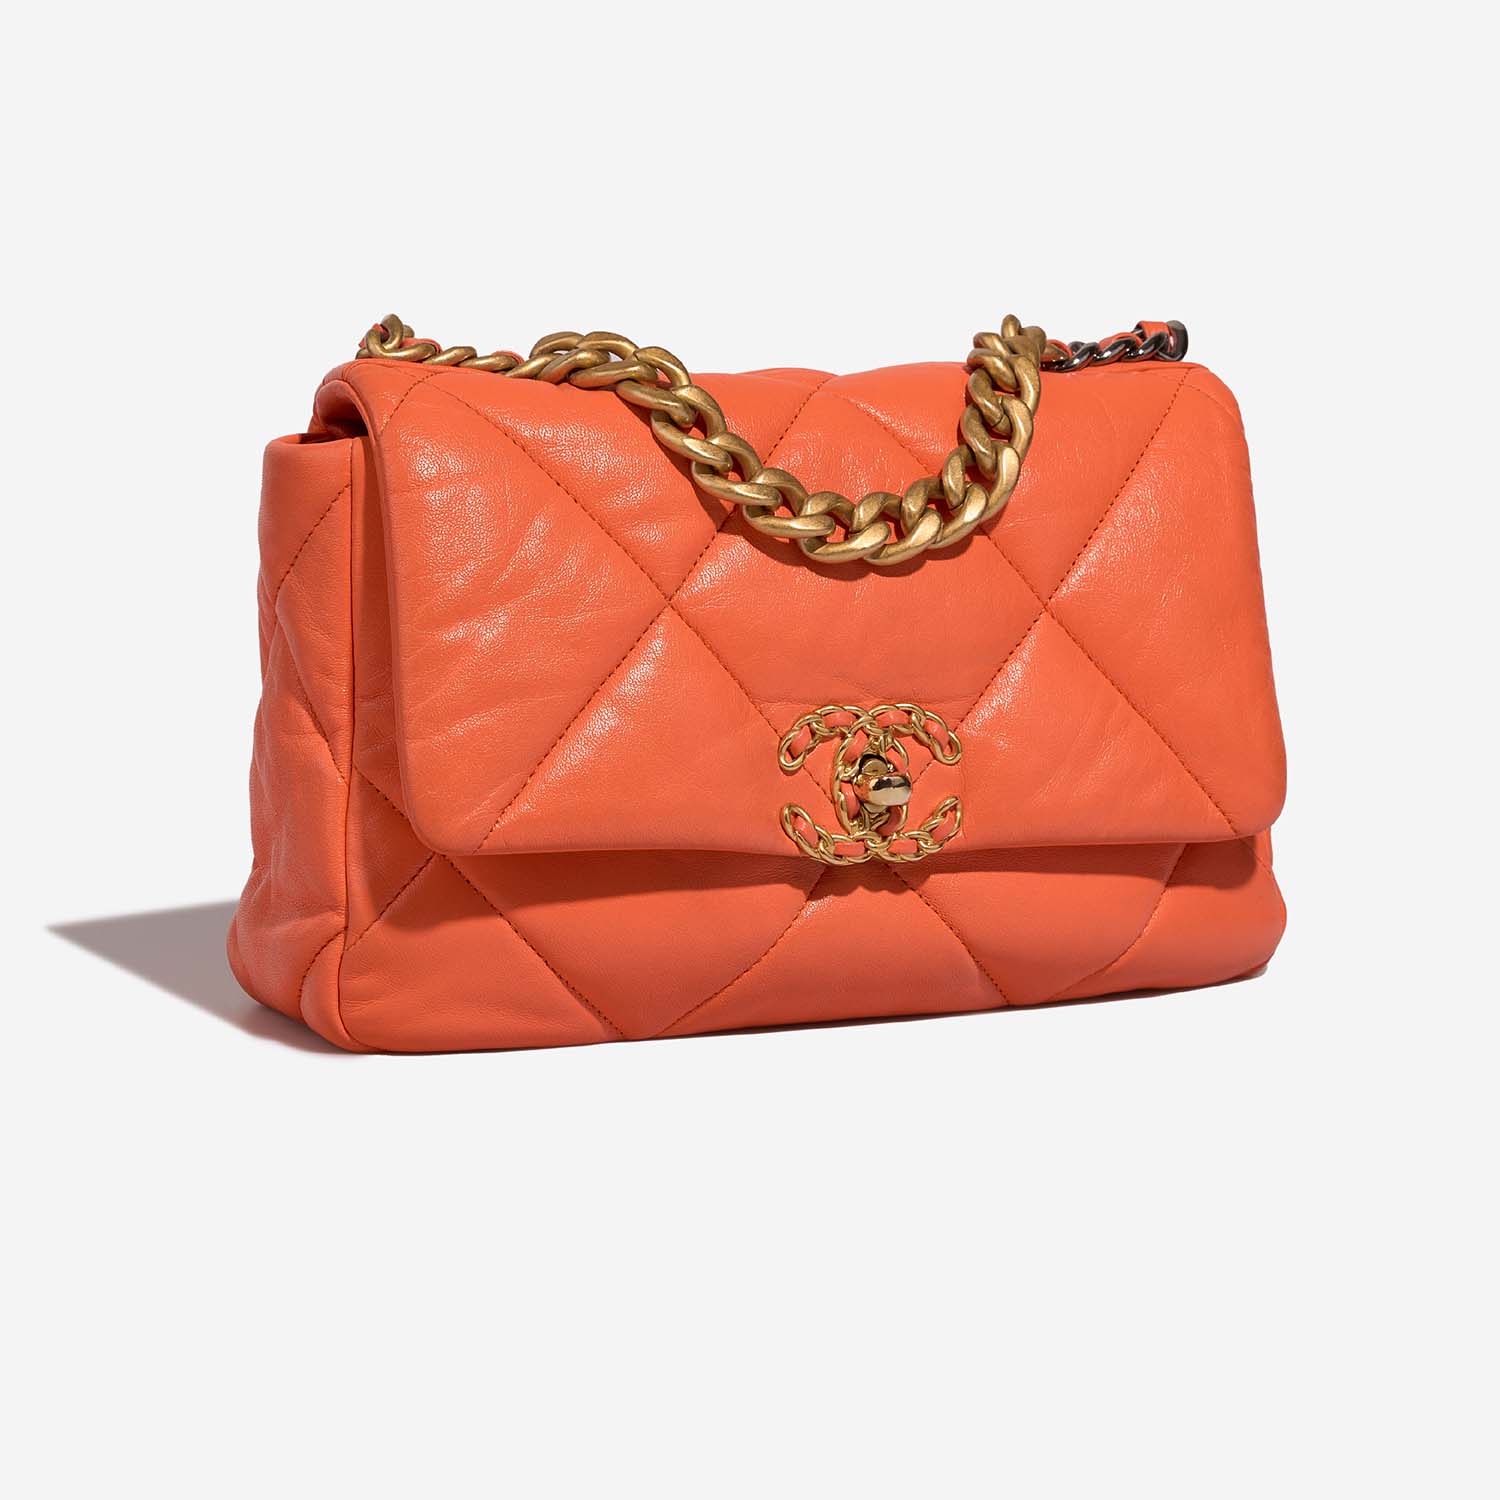 Chanel 19 FlapBag Orange Side Front  | Sell your designer bag on Saclab.com